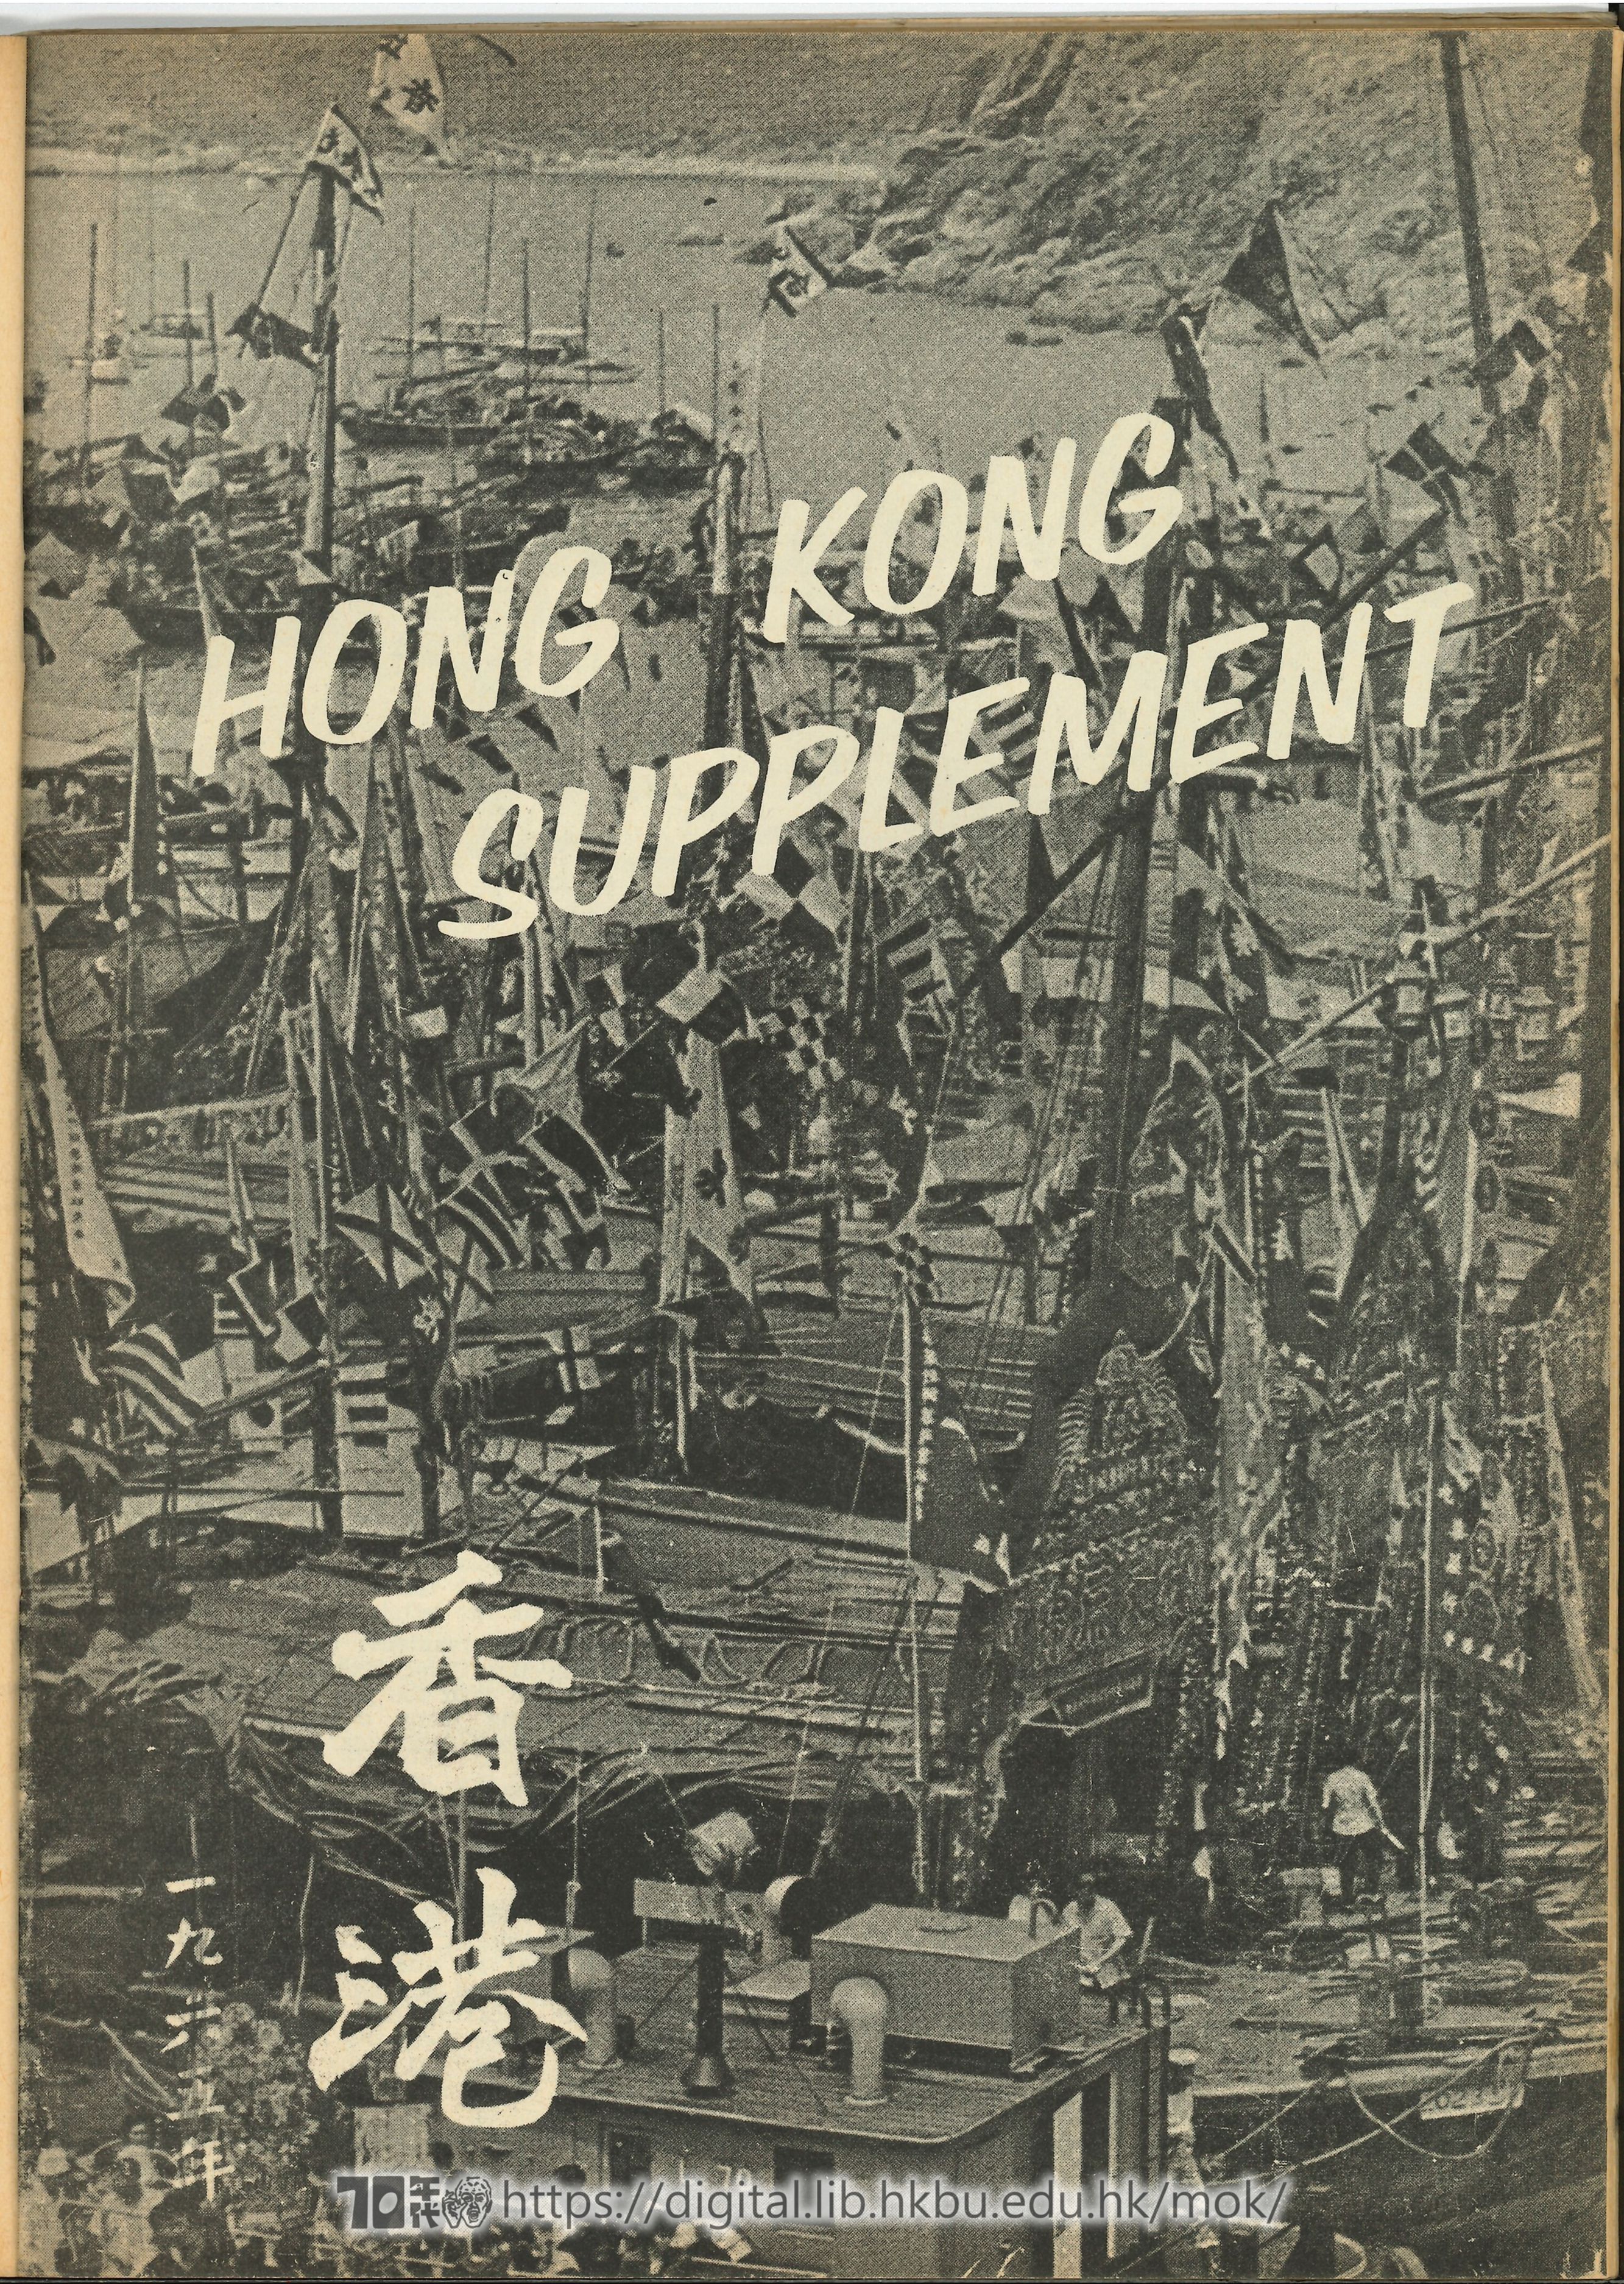  1 Hong Kong Supplement  